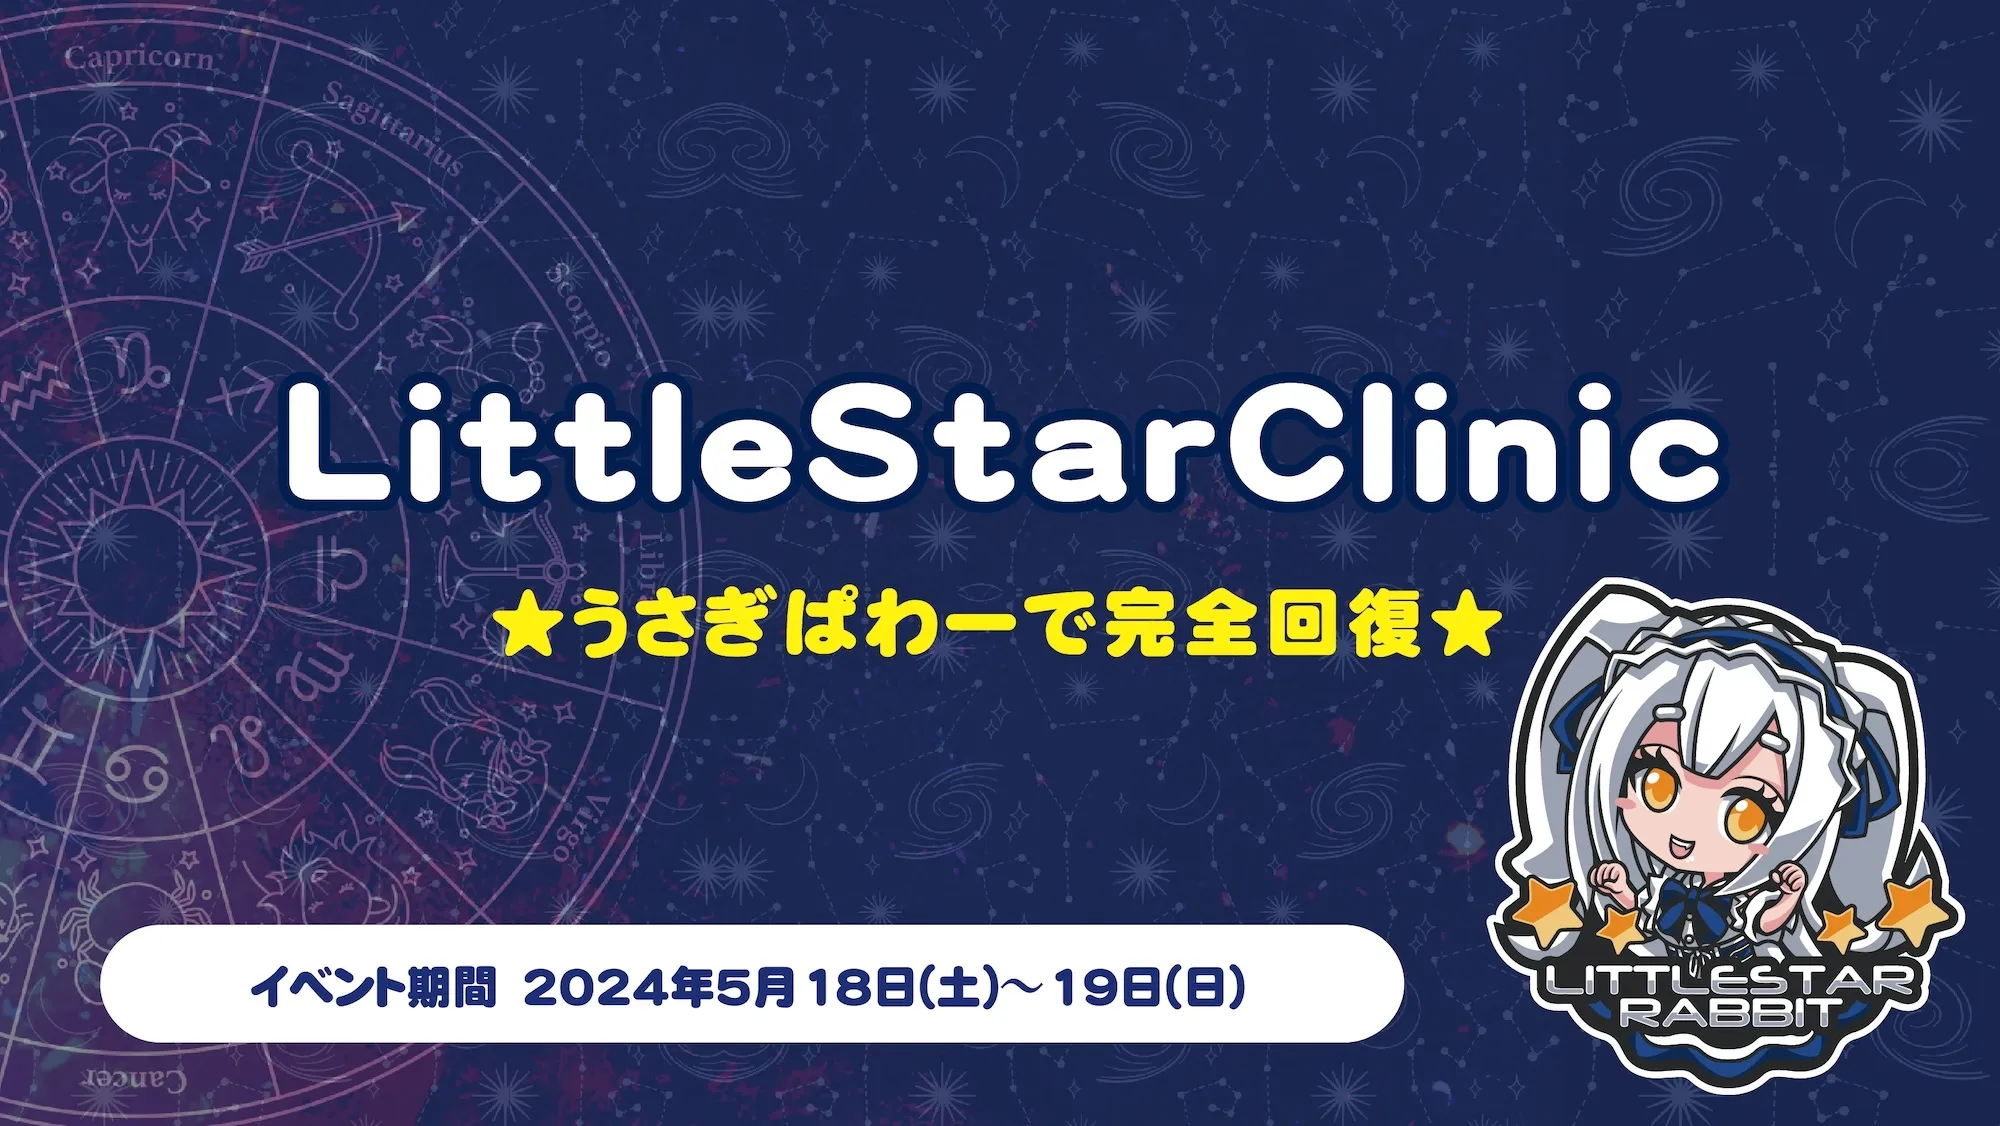 LittleStarClinic　- ★うさぎぱわーで完全回復★ - リトルスターラビット